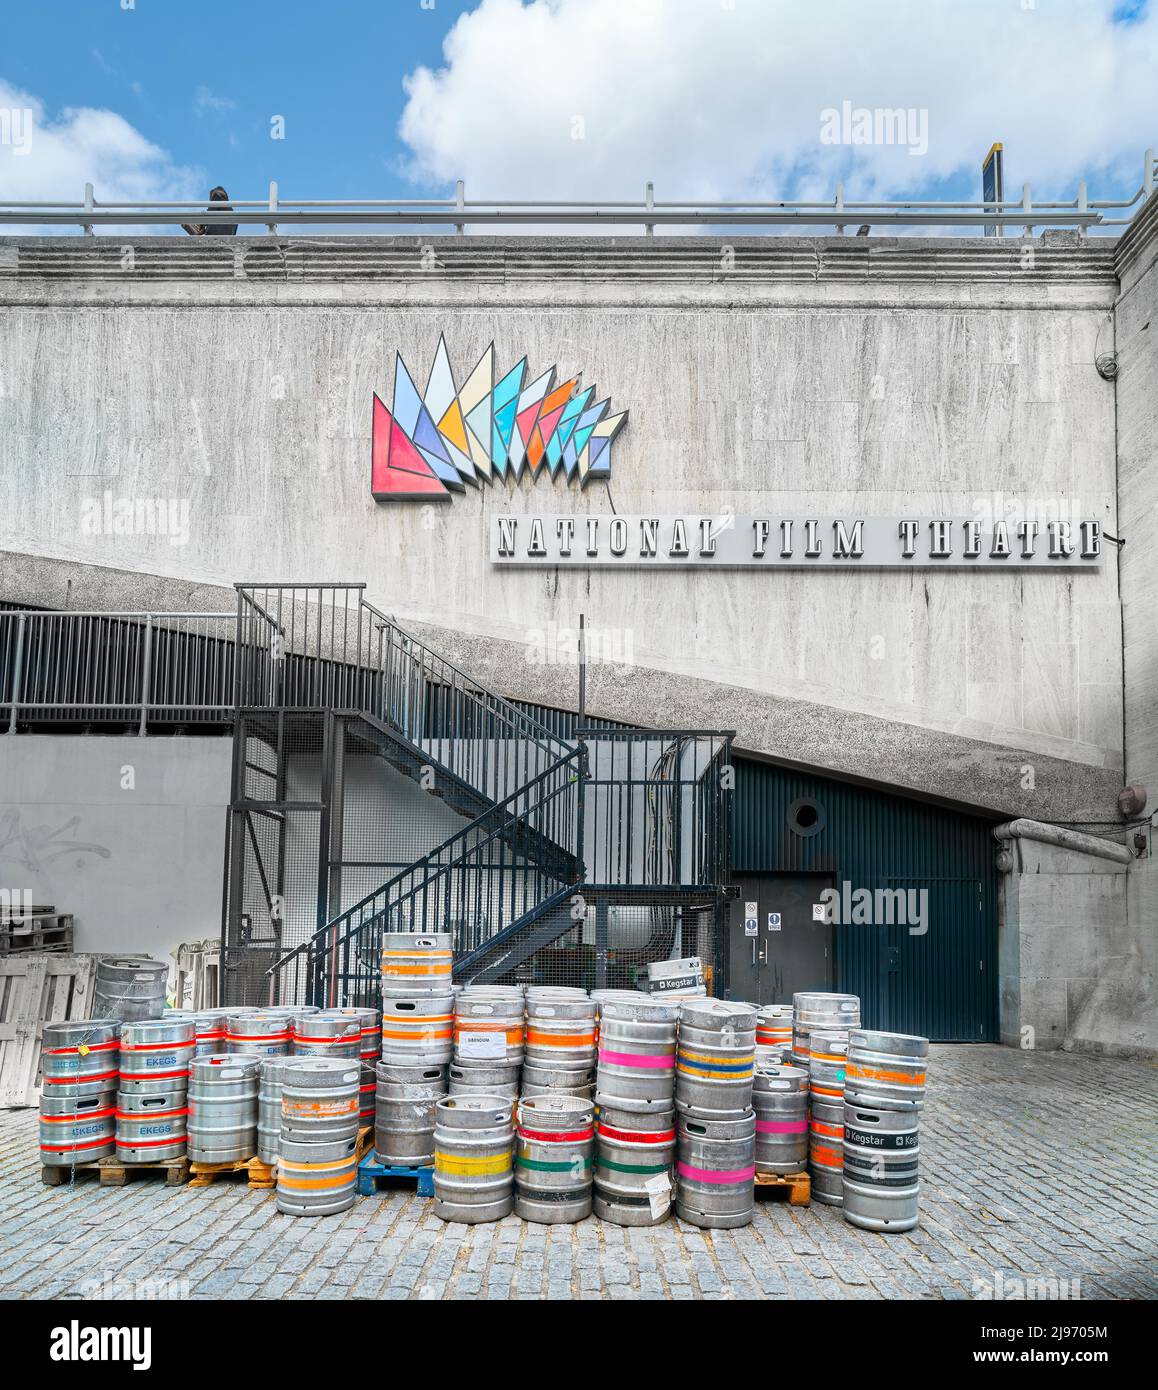 Leere Fass-Fässer mit Bier vor dem BFI (british Film Institute) National Film Theatre, South Bank, London, England. Stockfoto